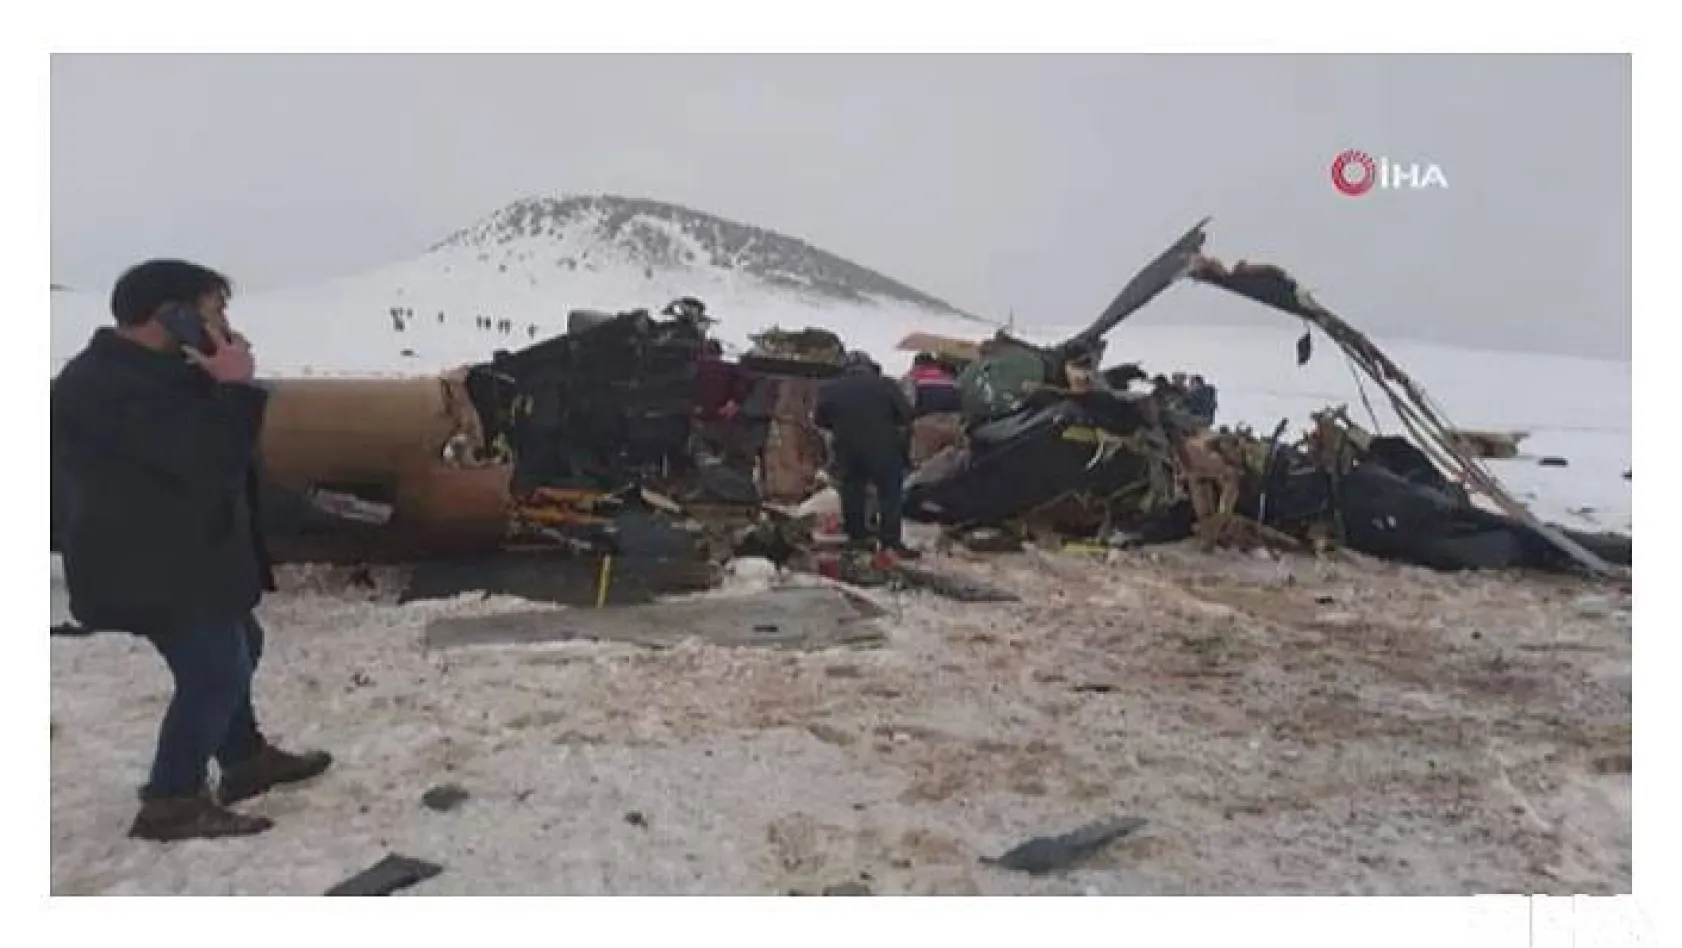 Bitlis'te askeri helikopter düştü: 11 askerimiz şehit oldu